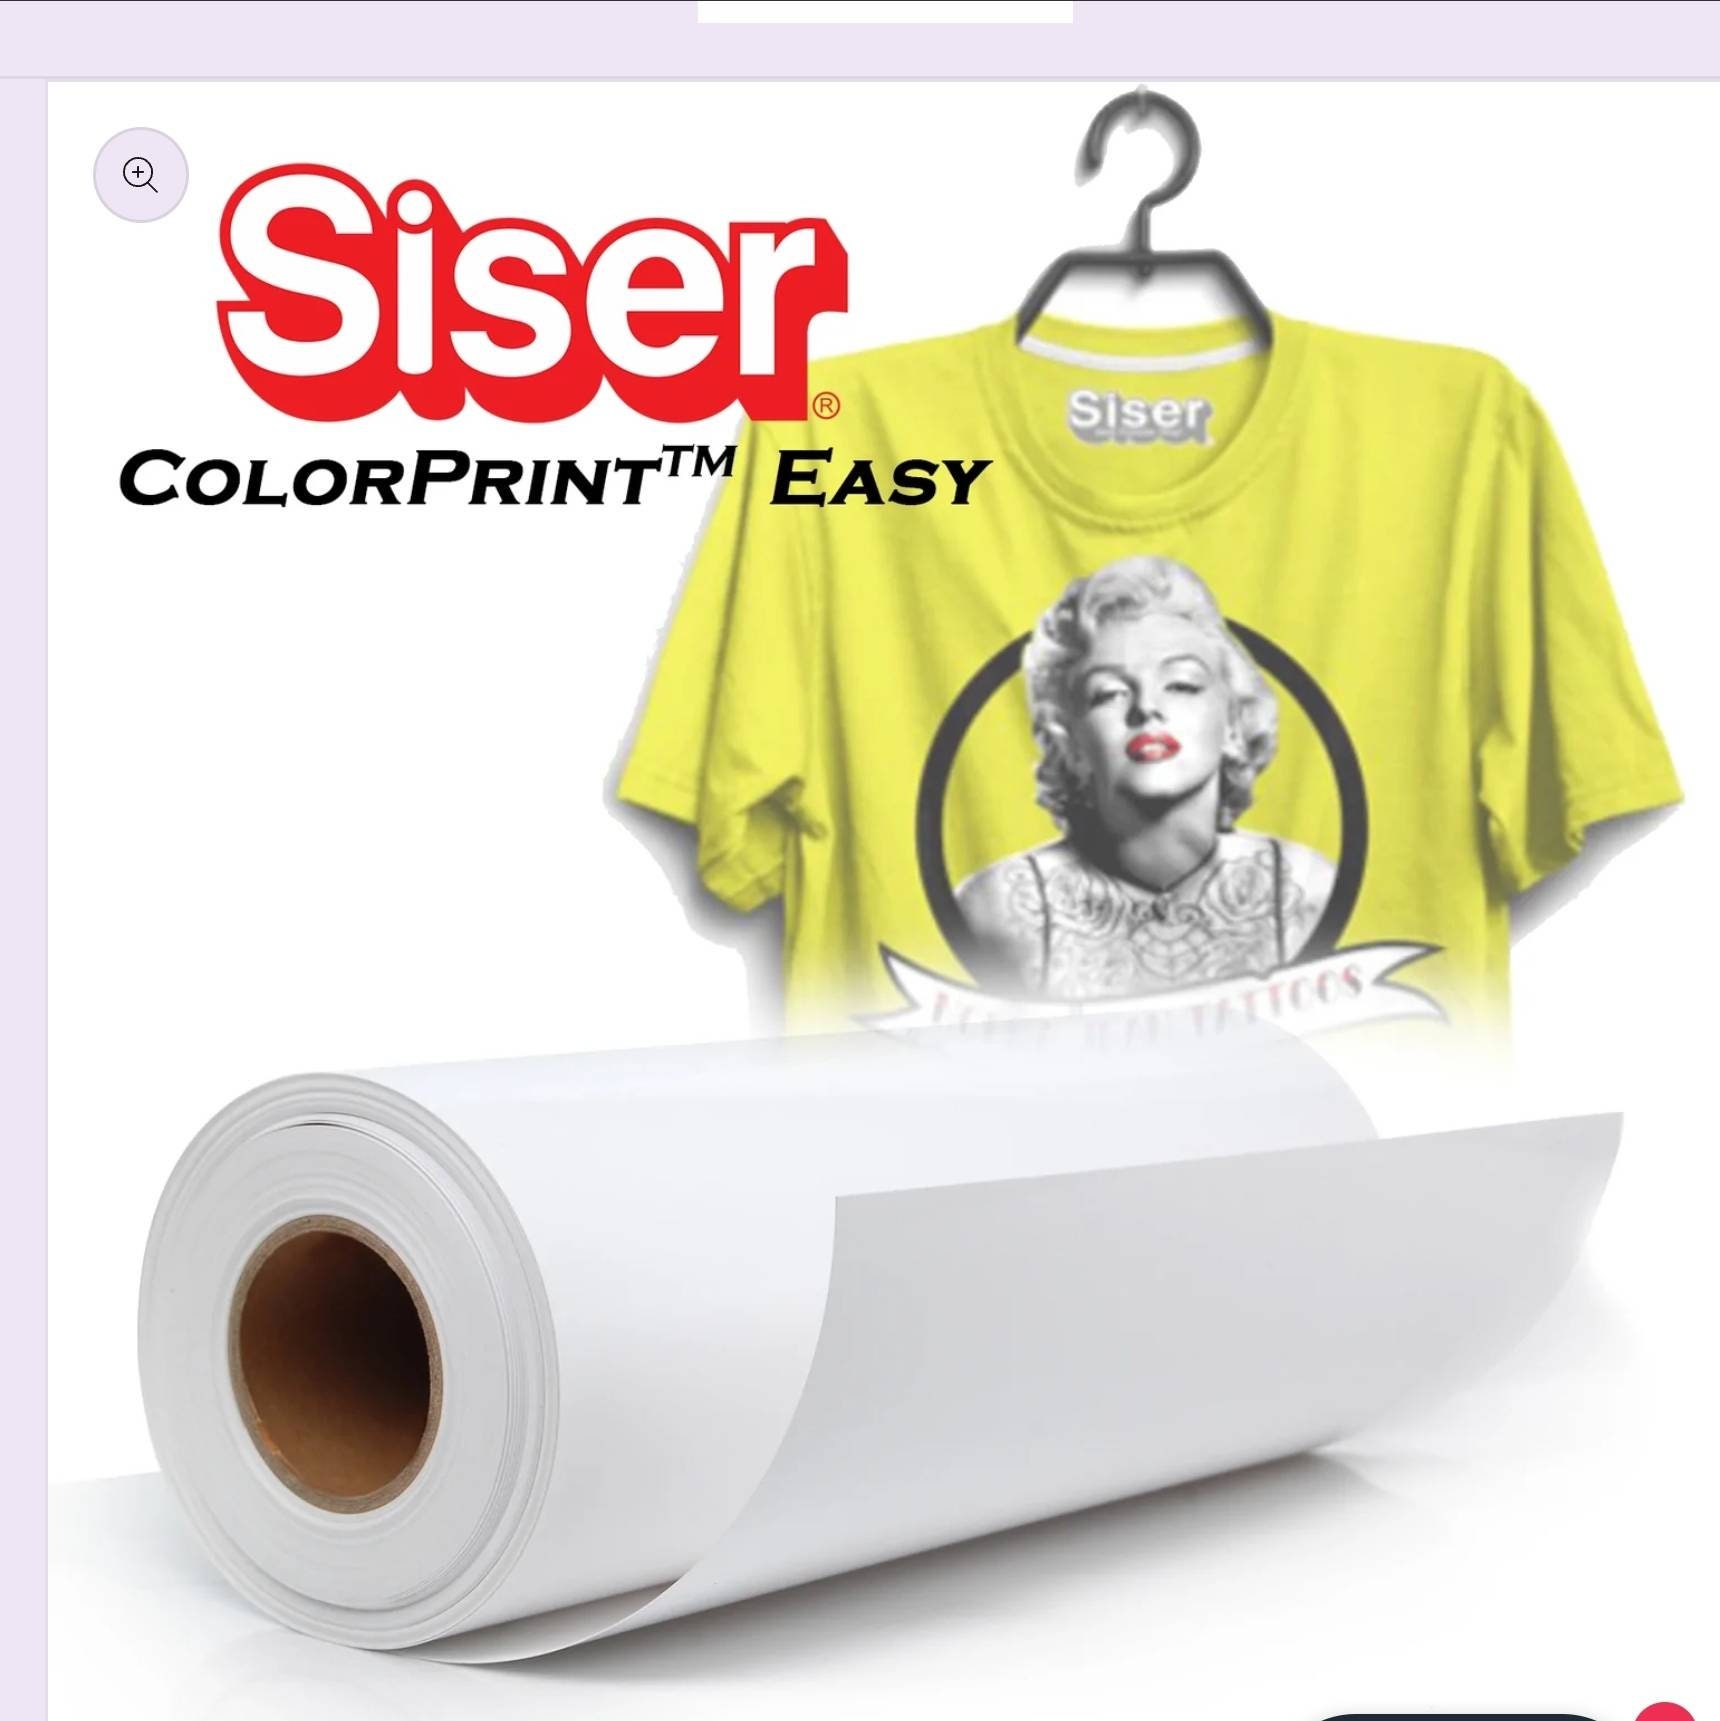 Siser ColorPrint Easy - the easiest weeding print vinyl ever!